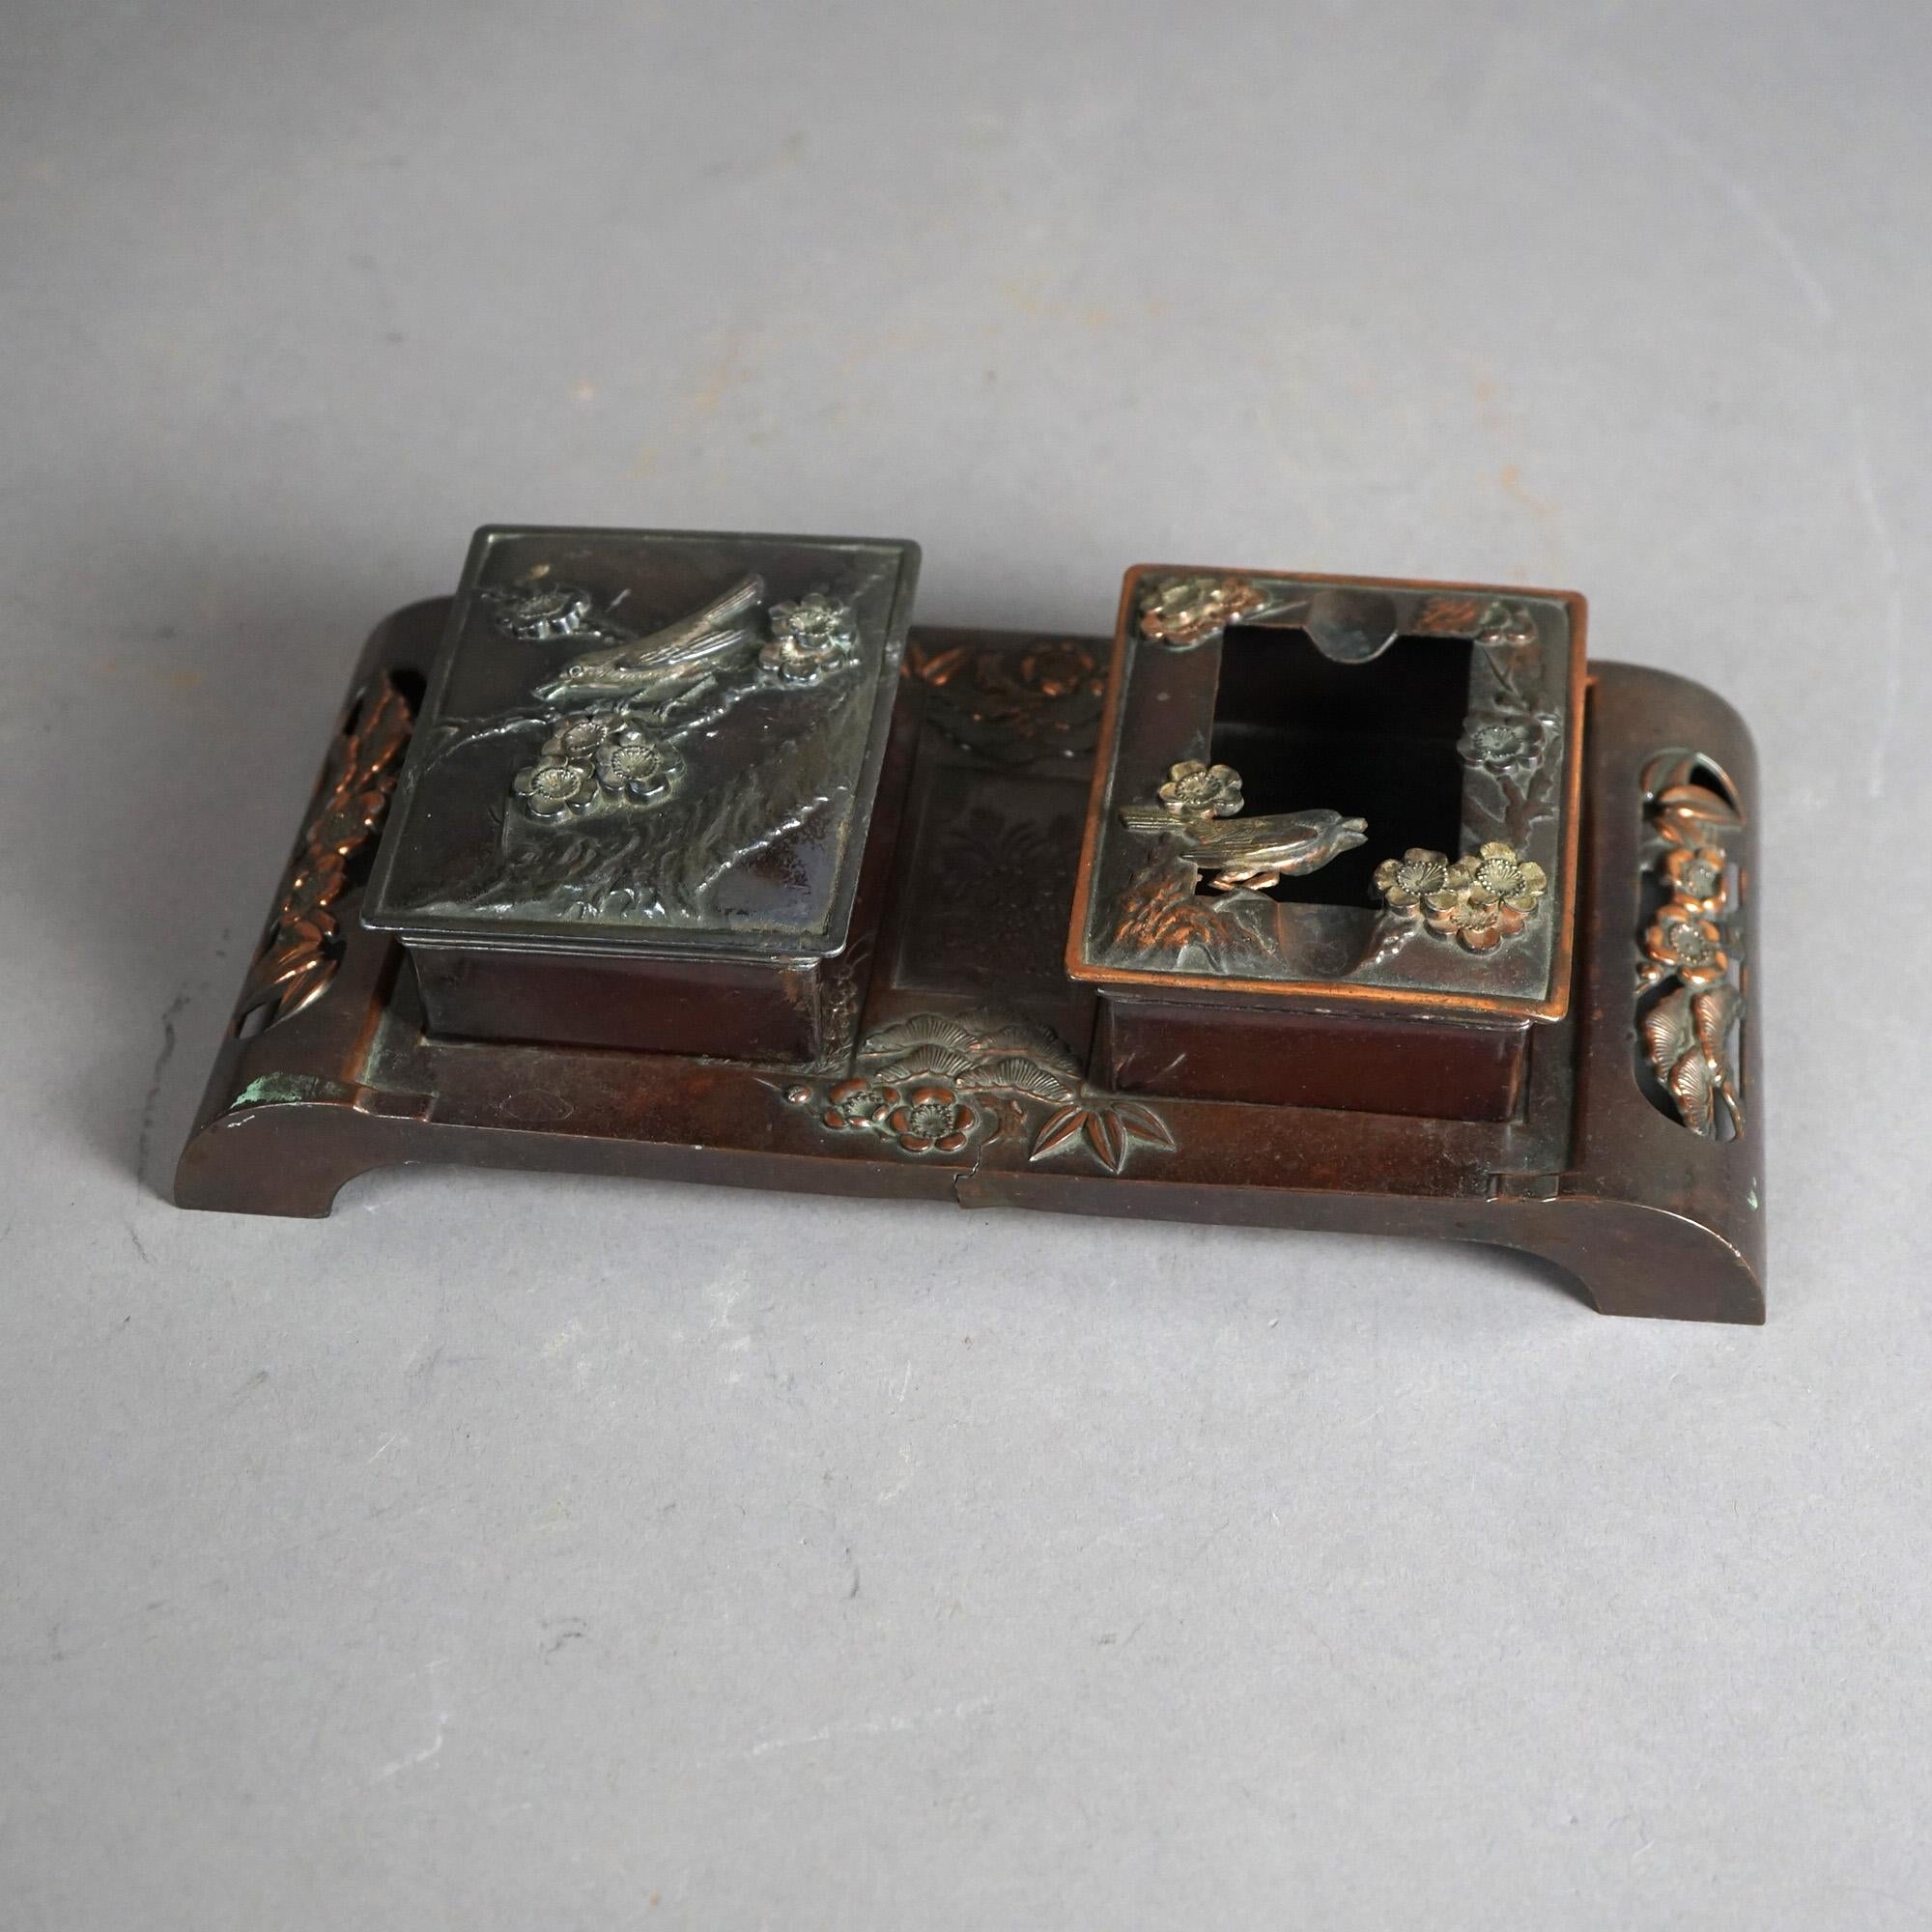 Ein antiker Schreibtisch-Organisator der Ästhetischen Bewegung bietet eine gemischte Metallkonstruktion mit zwei Boxen auf einem Tablett mit Fuß und mit geprägtem Vogel- und Blumendesign, um 1870

Maße: 2,5''H x 10,25''B x 5,25''D

Kataloghinweis: